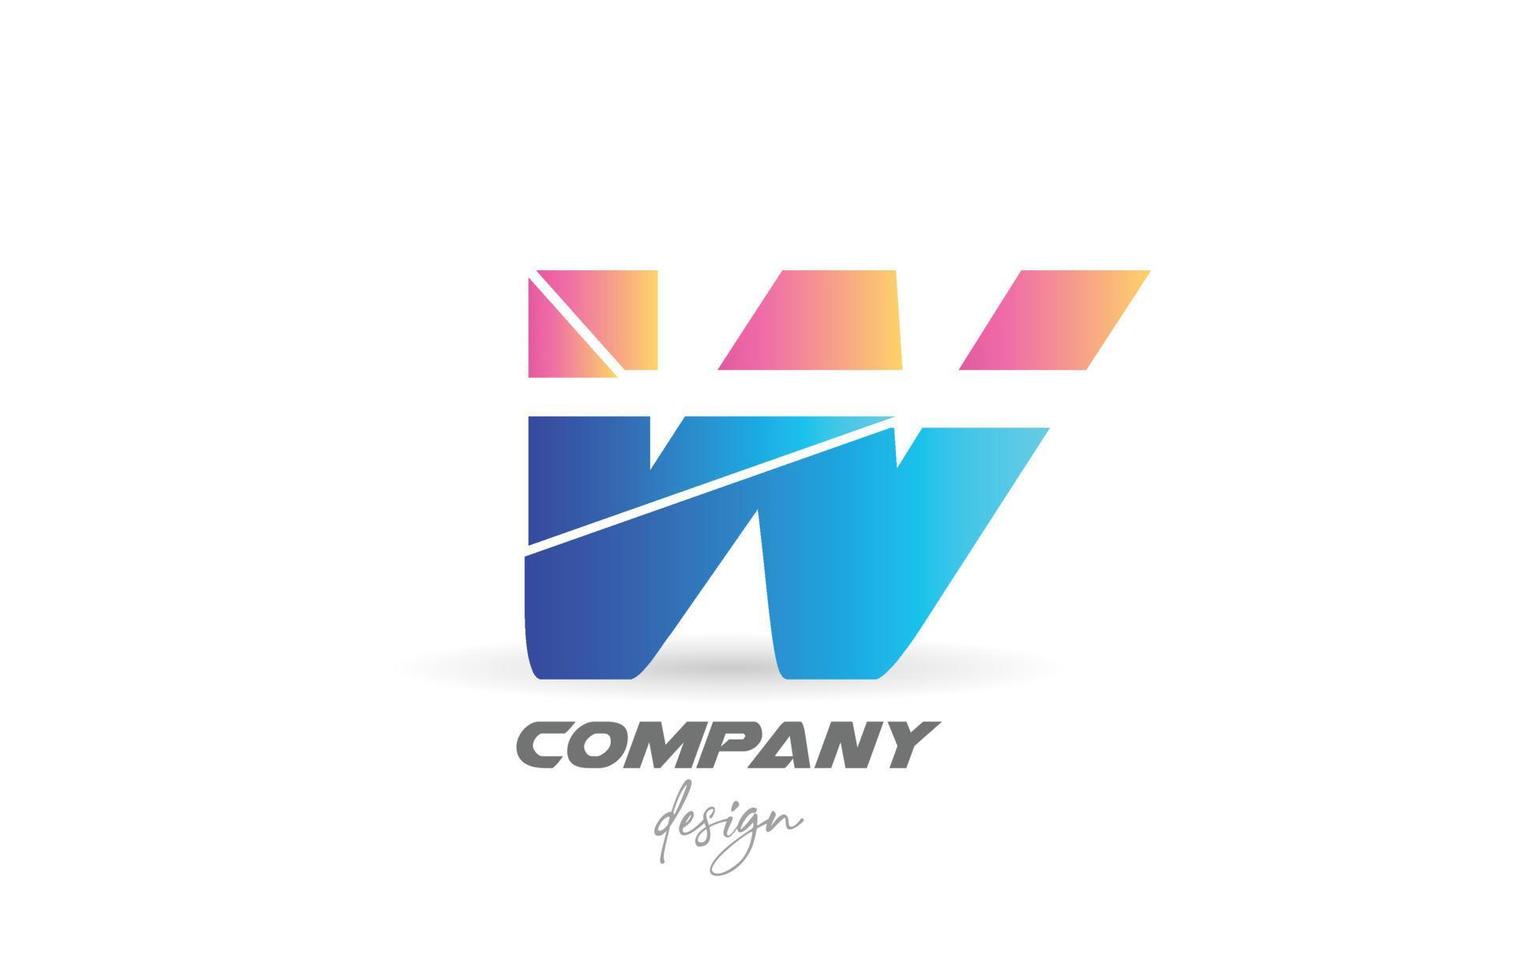 buntes w-Alphabet-Buchstaben-Logo-Symbol mit geschnittenem Design und blau-rosa Farben. kreative vorlage für geschäft und unternehmen vektor